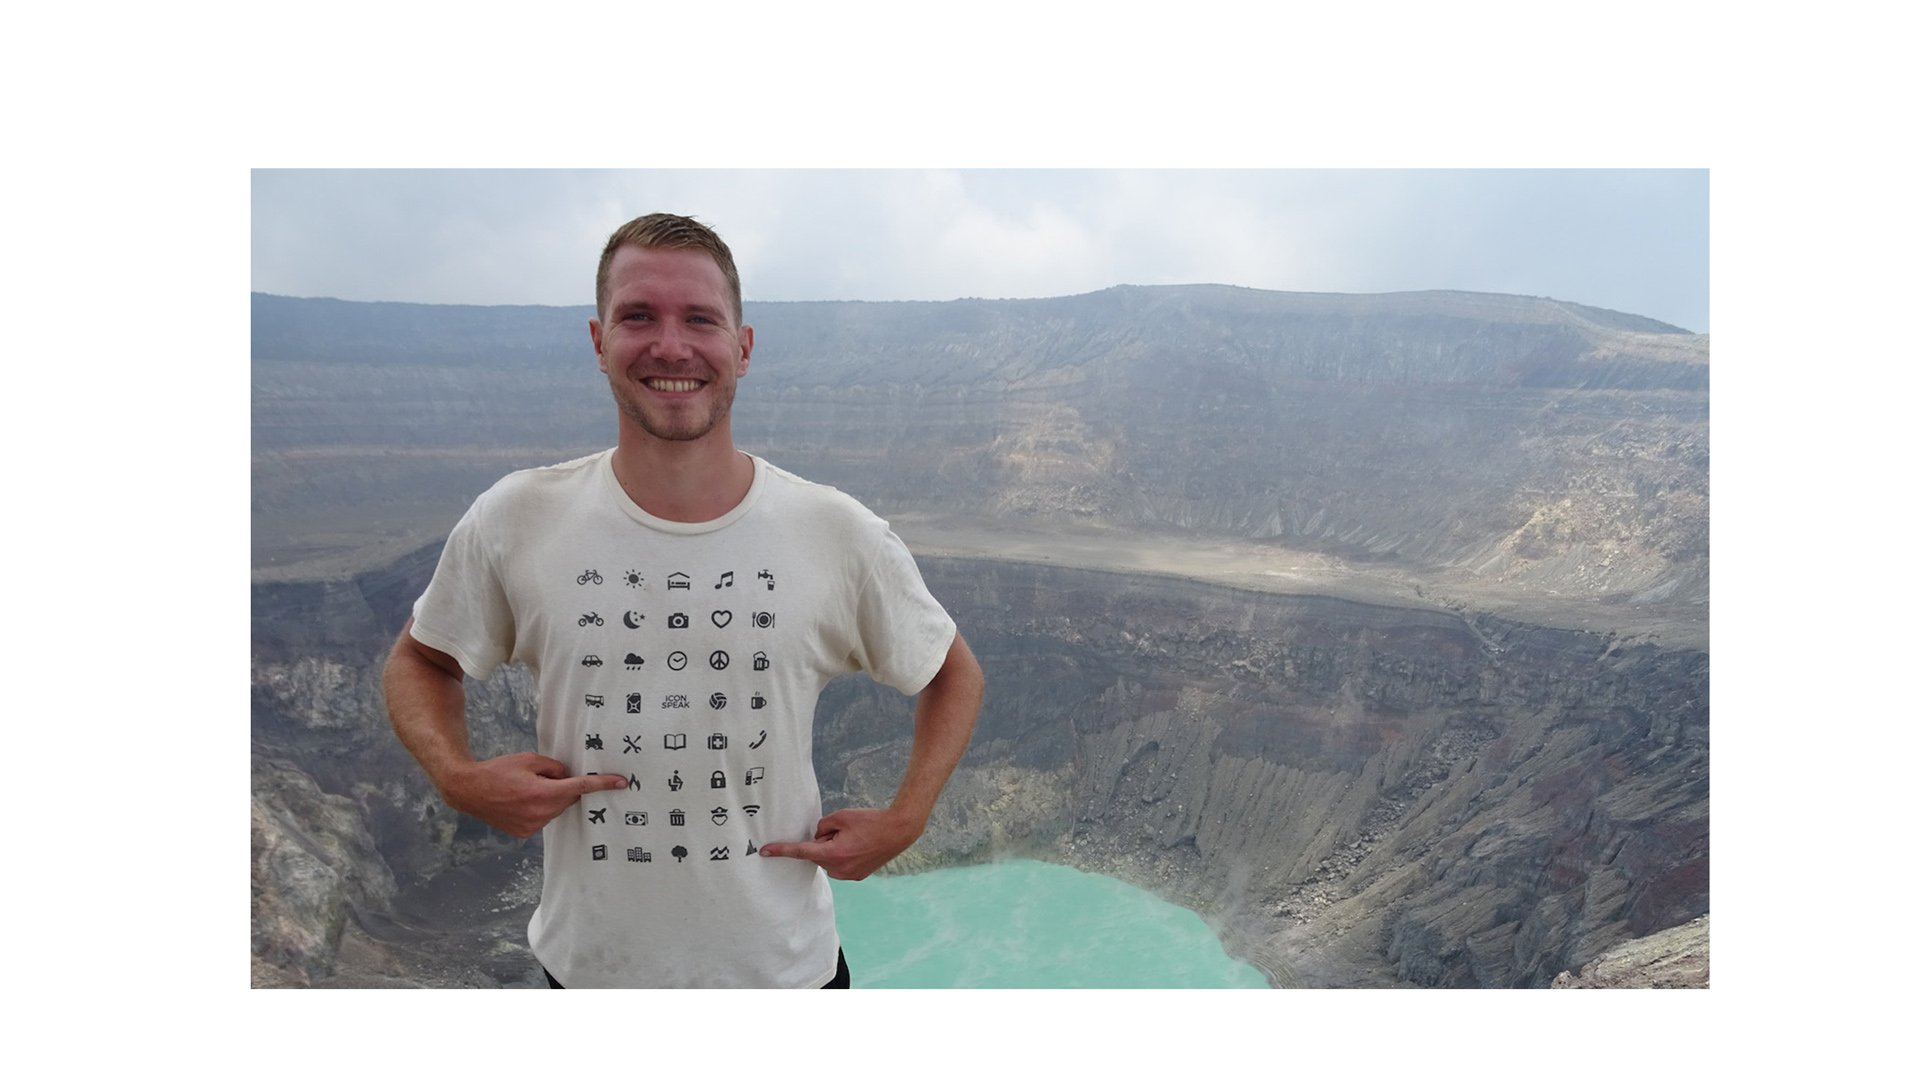 Con 40 iconos gráficos, esta camisa facilita la interacción entre los turistas